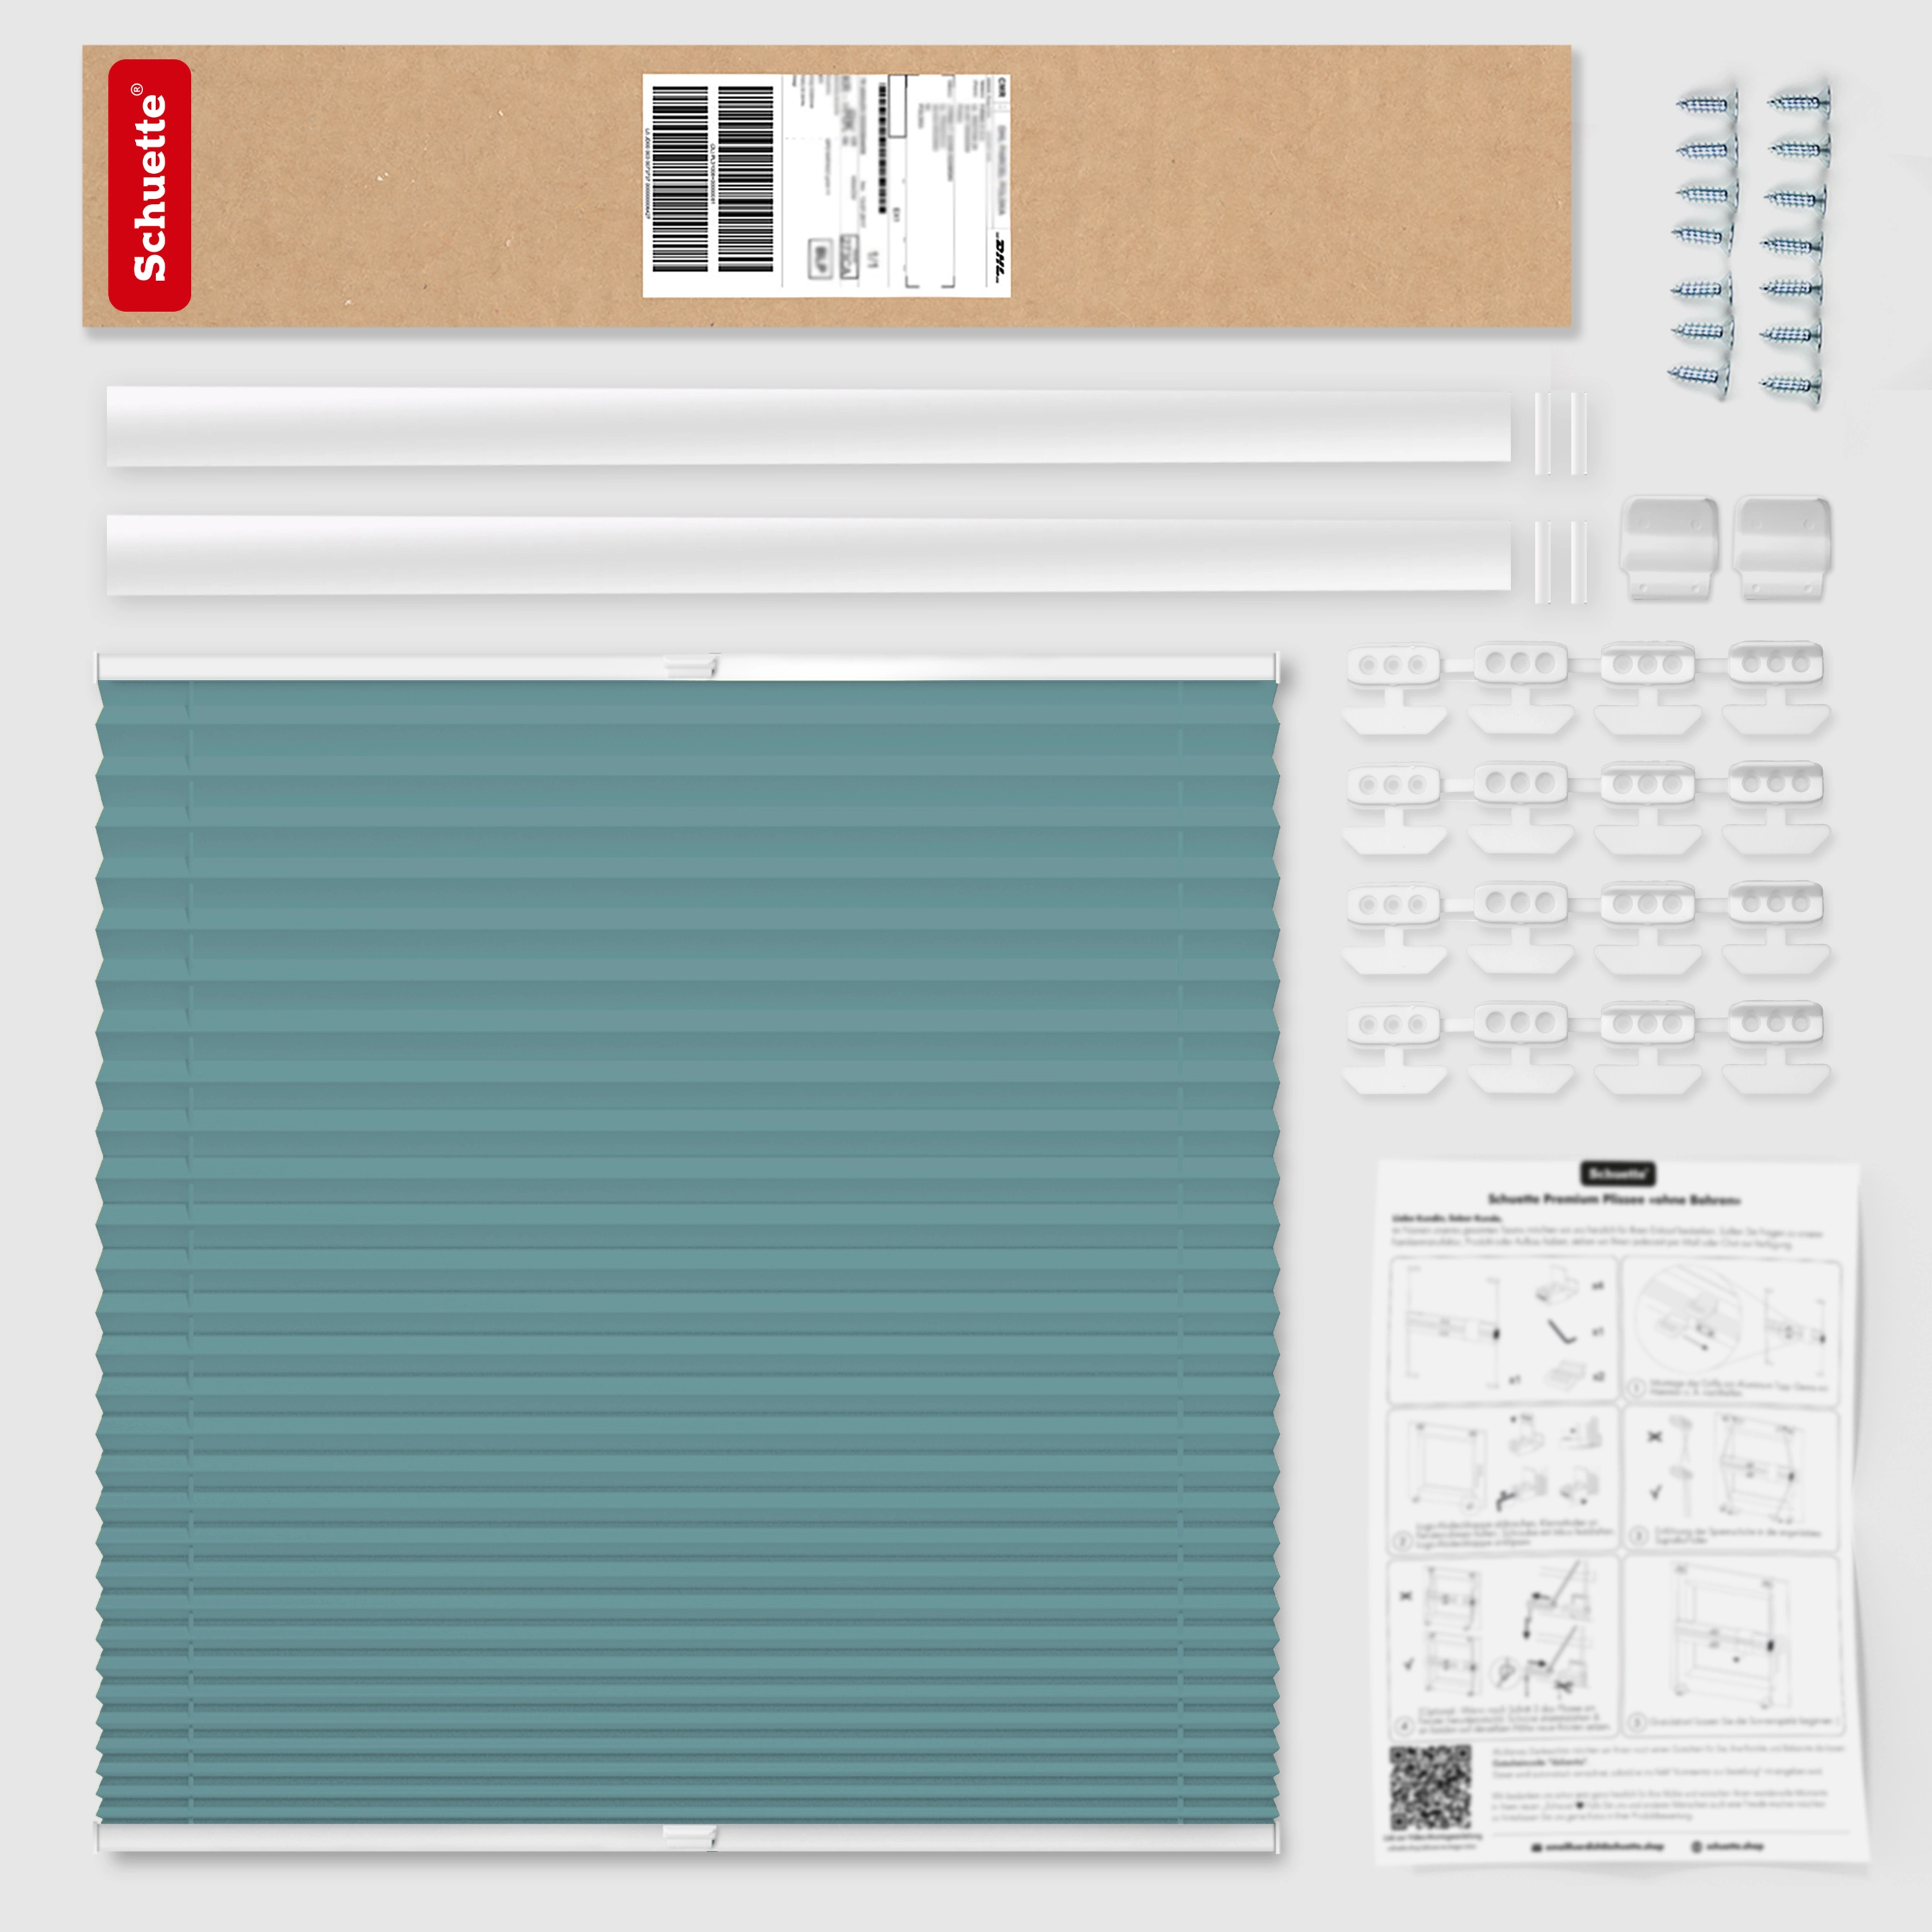 Schuette® Dachfenster Plissee nach Maß • Thermo Kollektion: Teal Aura (Türkis) • Profilfarbe: Weiß